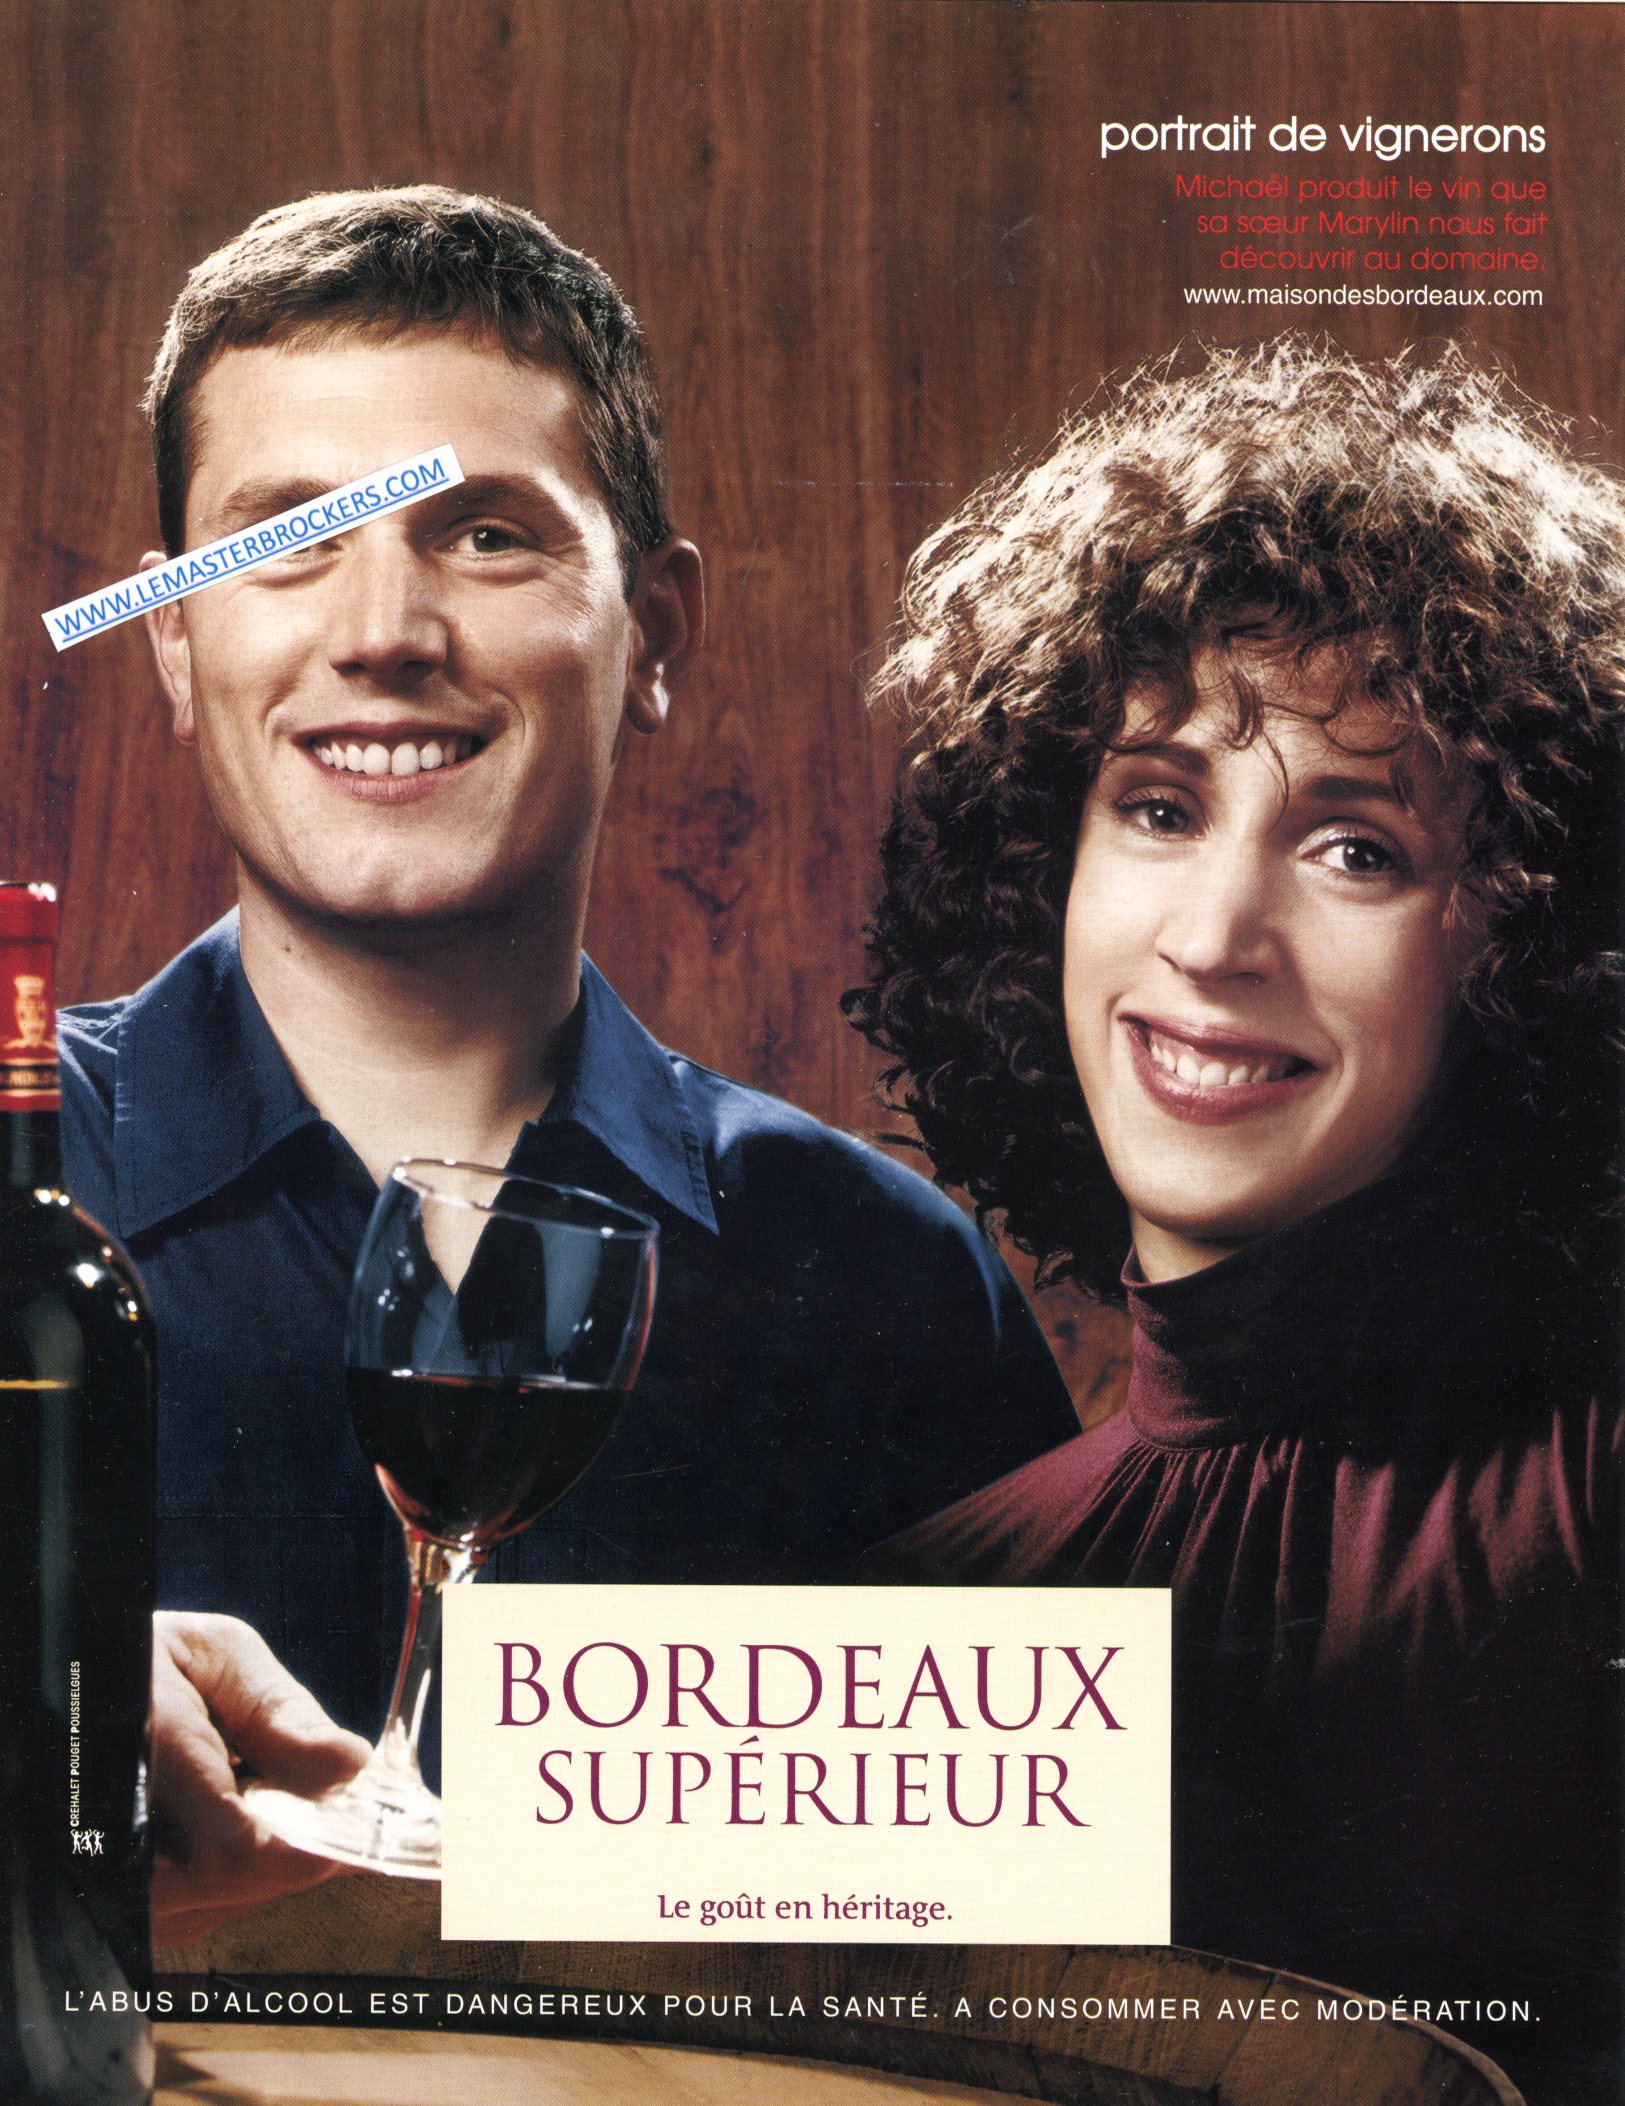 PUBLICITÉ ADVERTISING 2001 PORTRAIT VIGNERONS VIN DE BORDEAUX MICHAEL ET MARYLIN LEMASTERBROCKERS